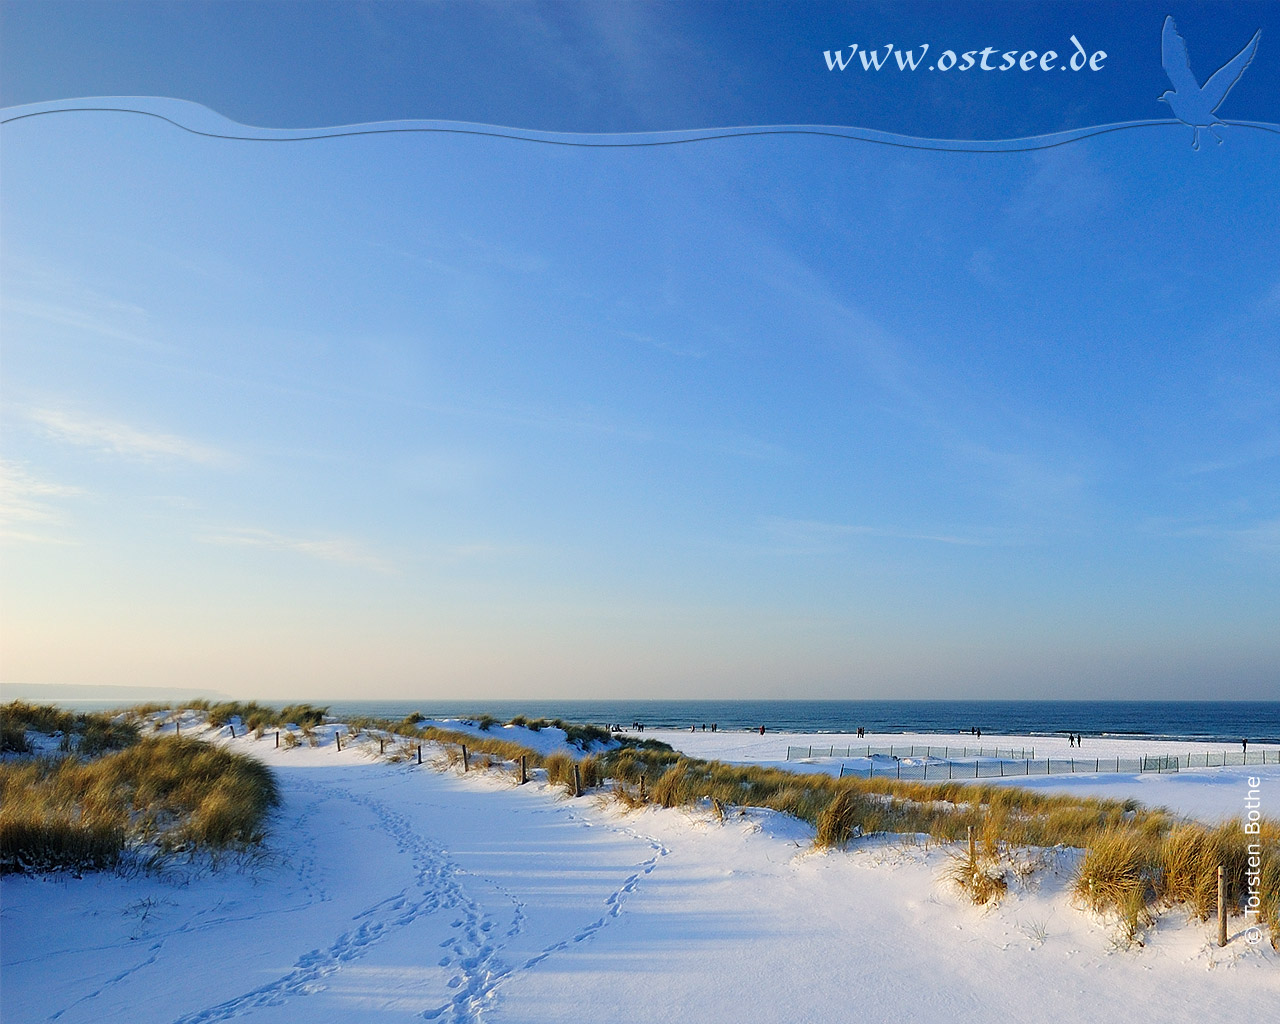 Hintergrundbild: Winter an der Ostsee